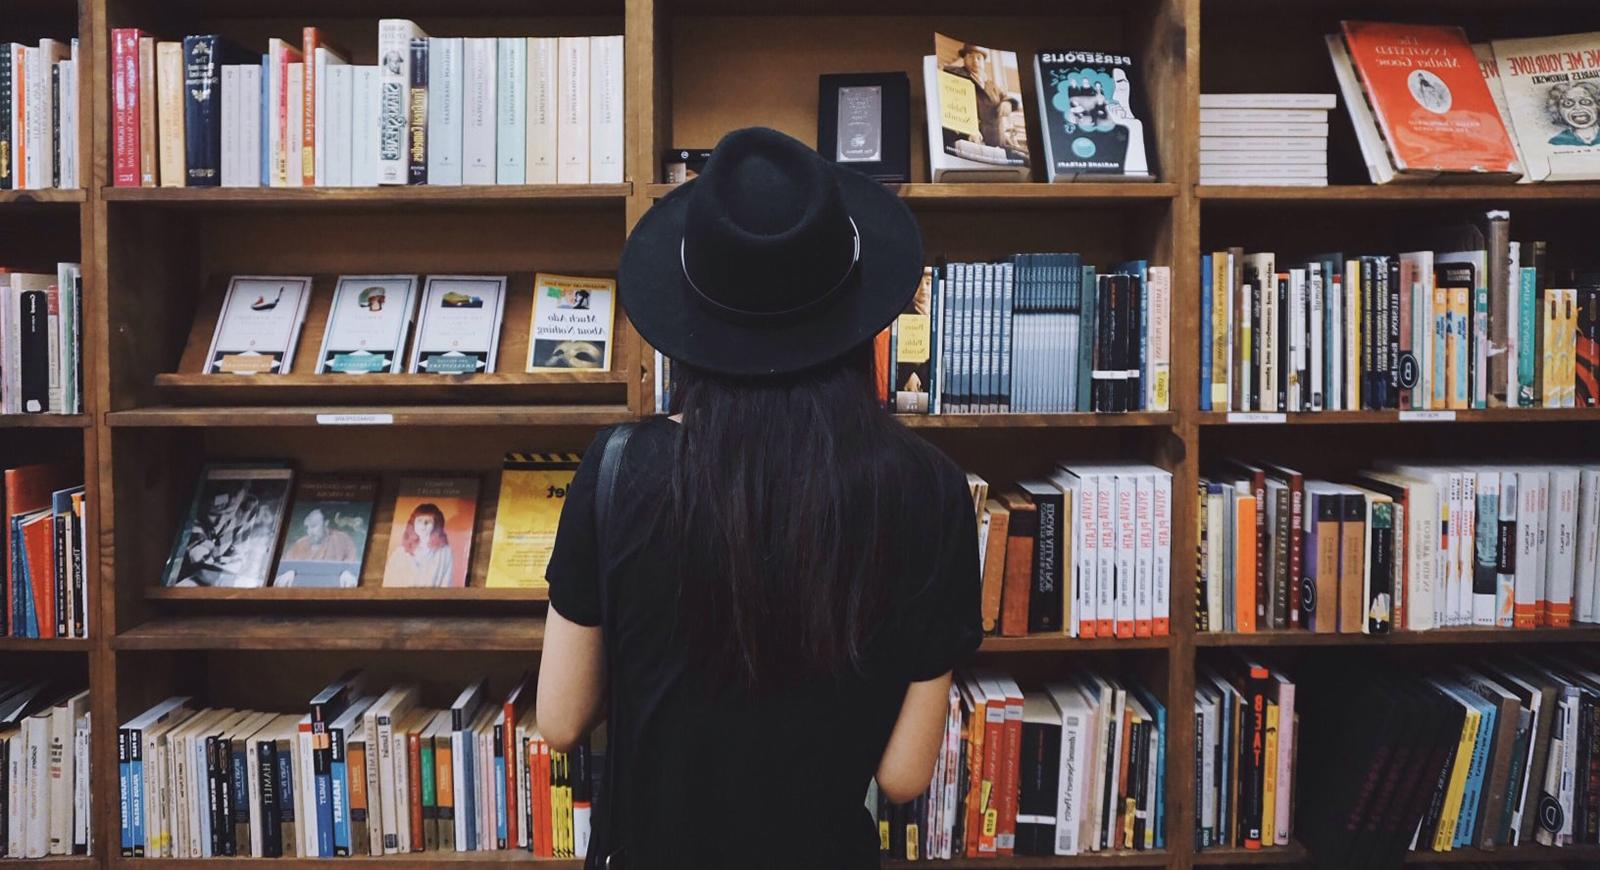 图为一名戴着黑色宽檐帽、身穿黑色t恤的女子站在彩色书架前. 